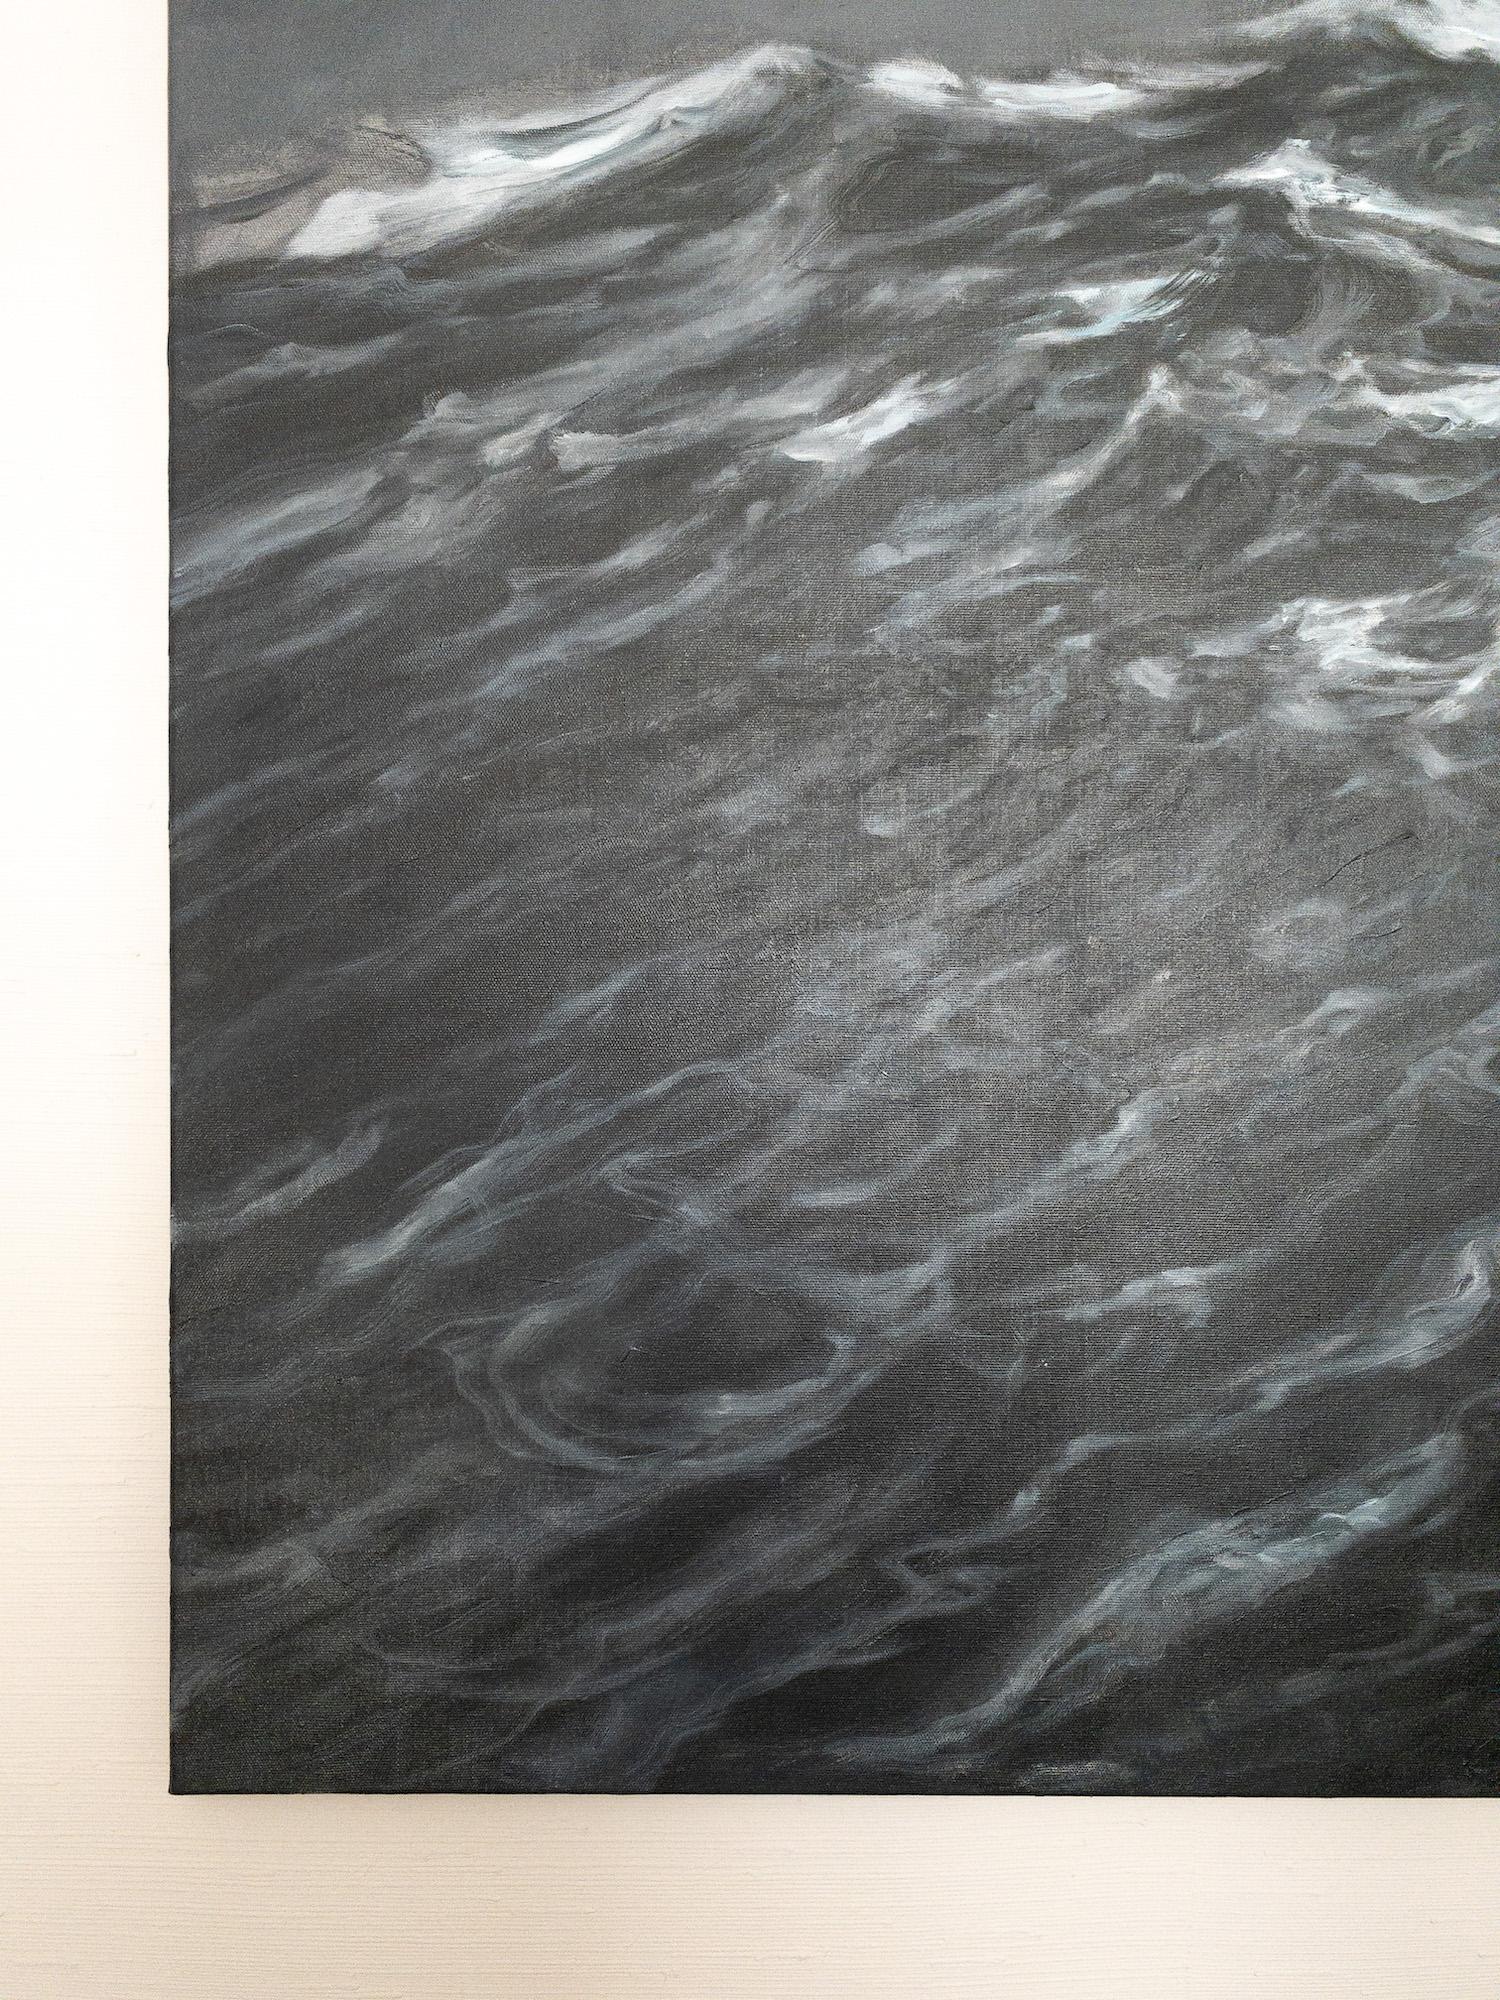 The Outburst by Franco Salas Borquez - Contemporary oil painting, seascape, wave For Sale 8